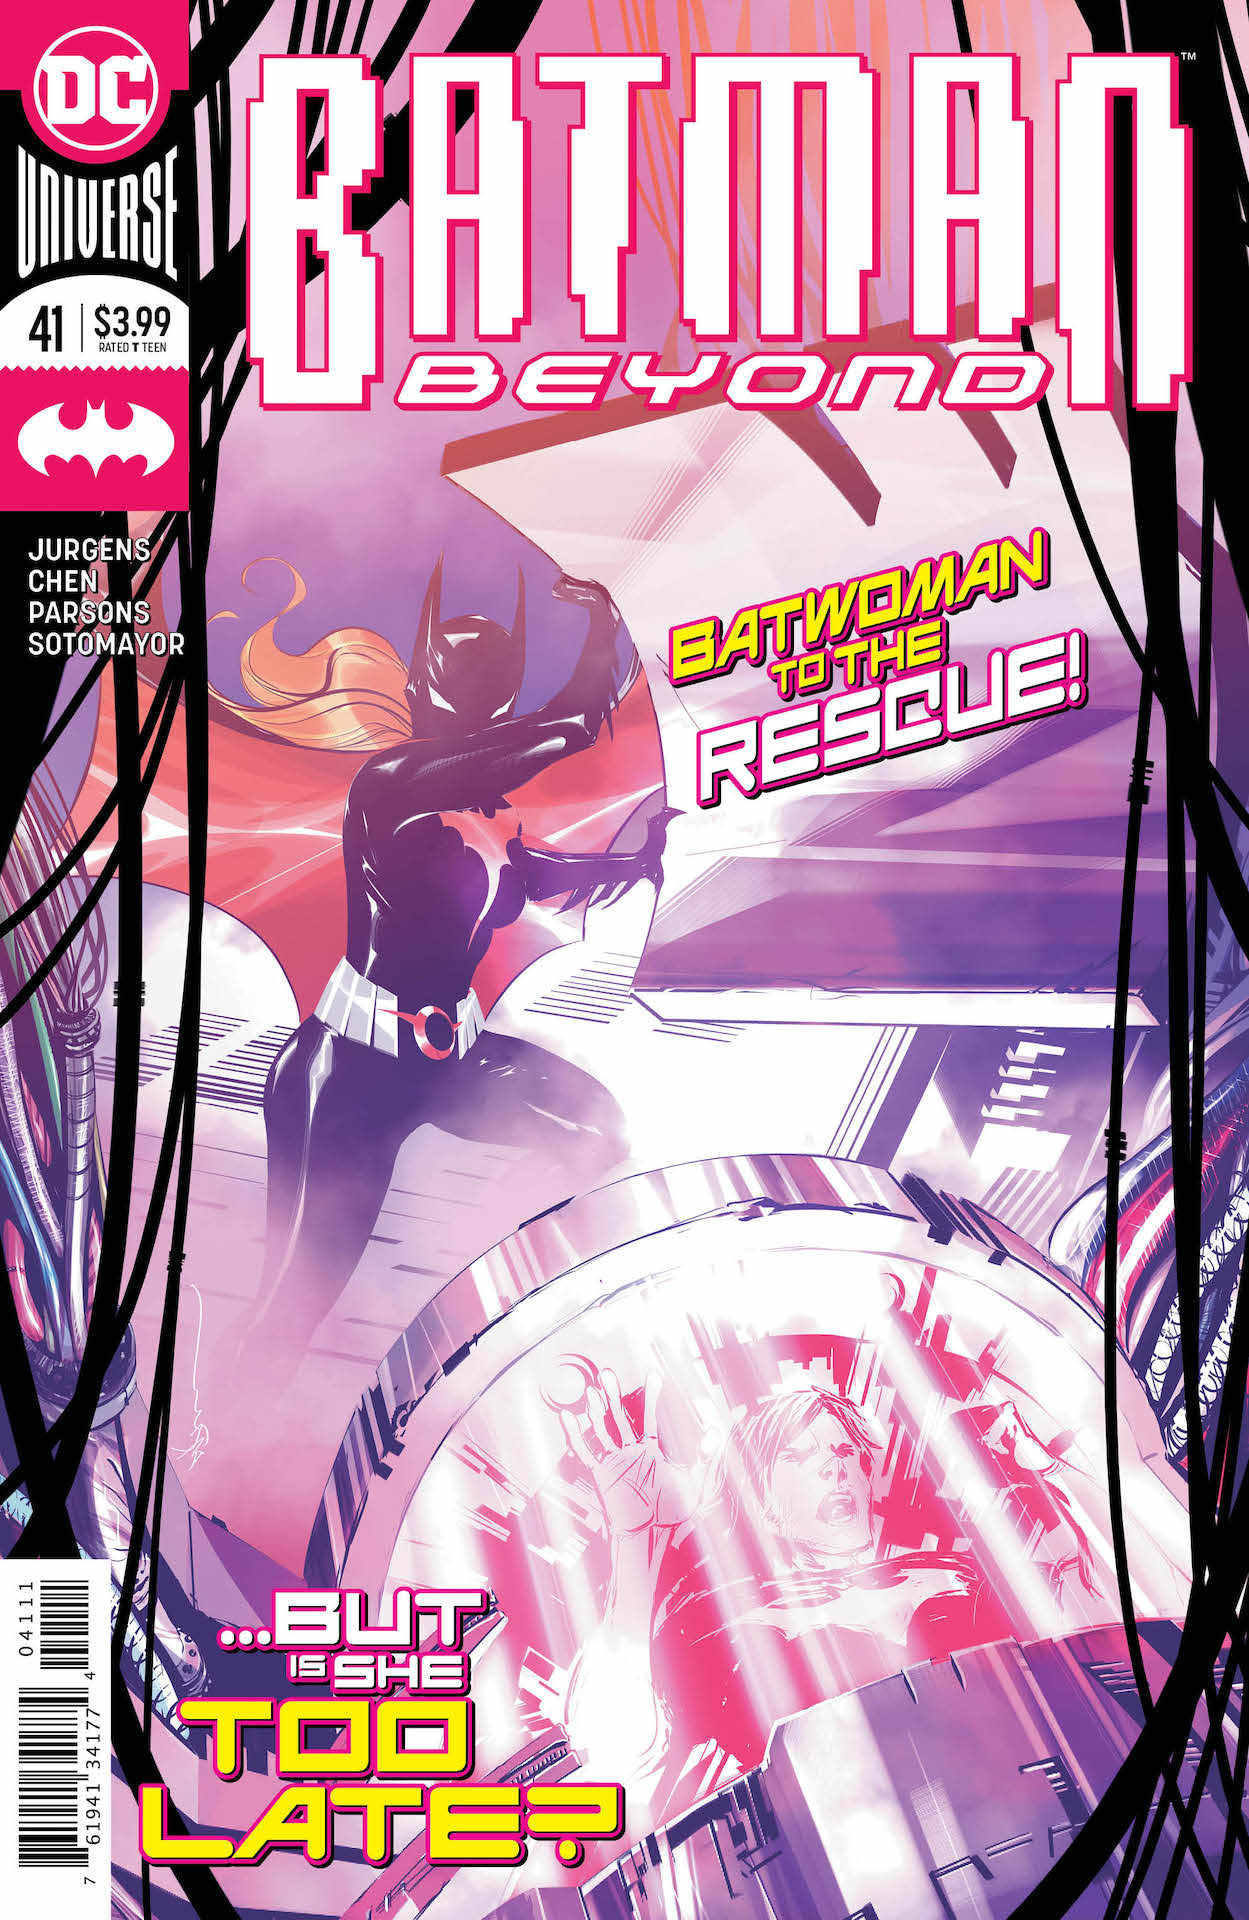 DC Preview: Batman Beyond #41